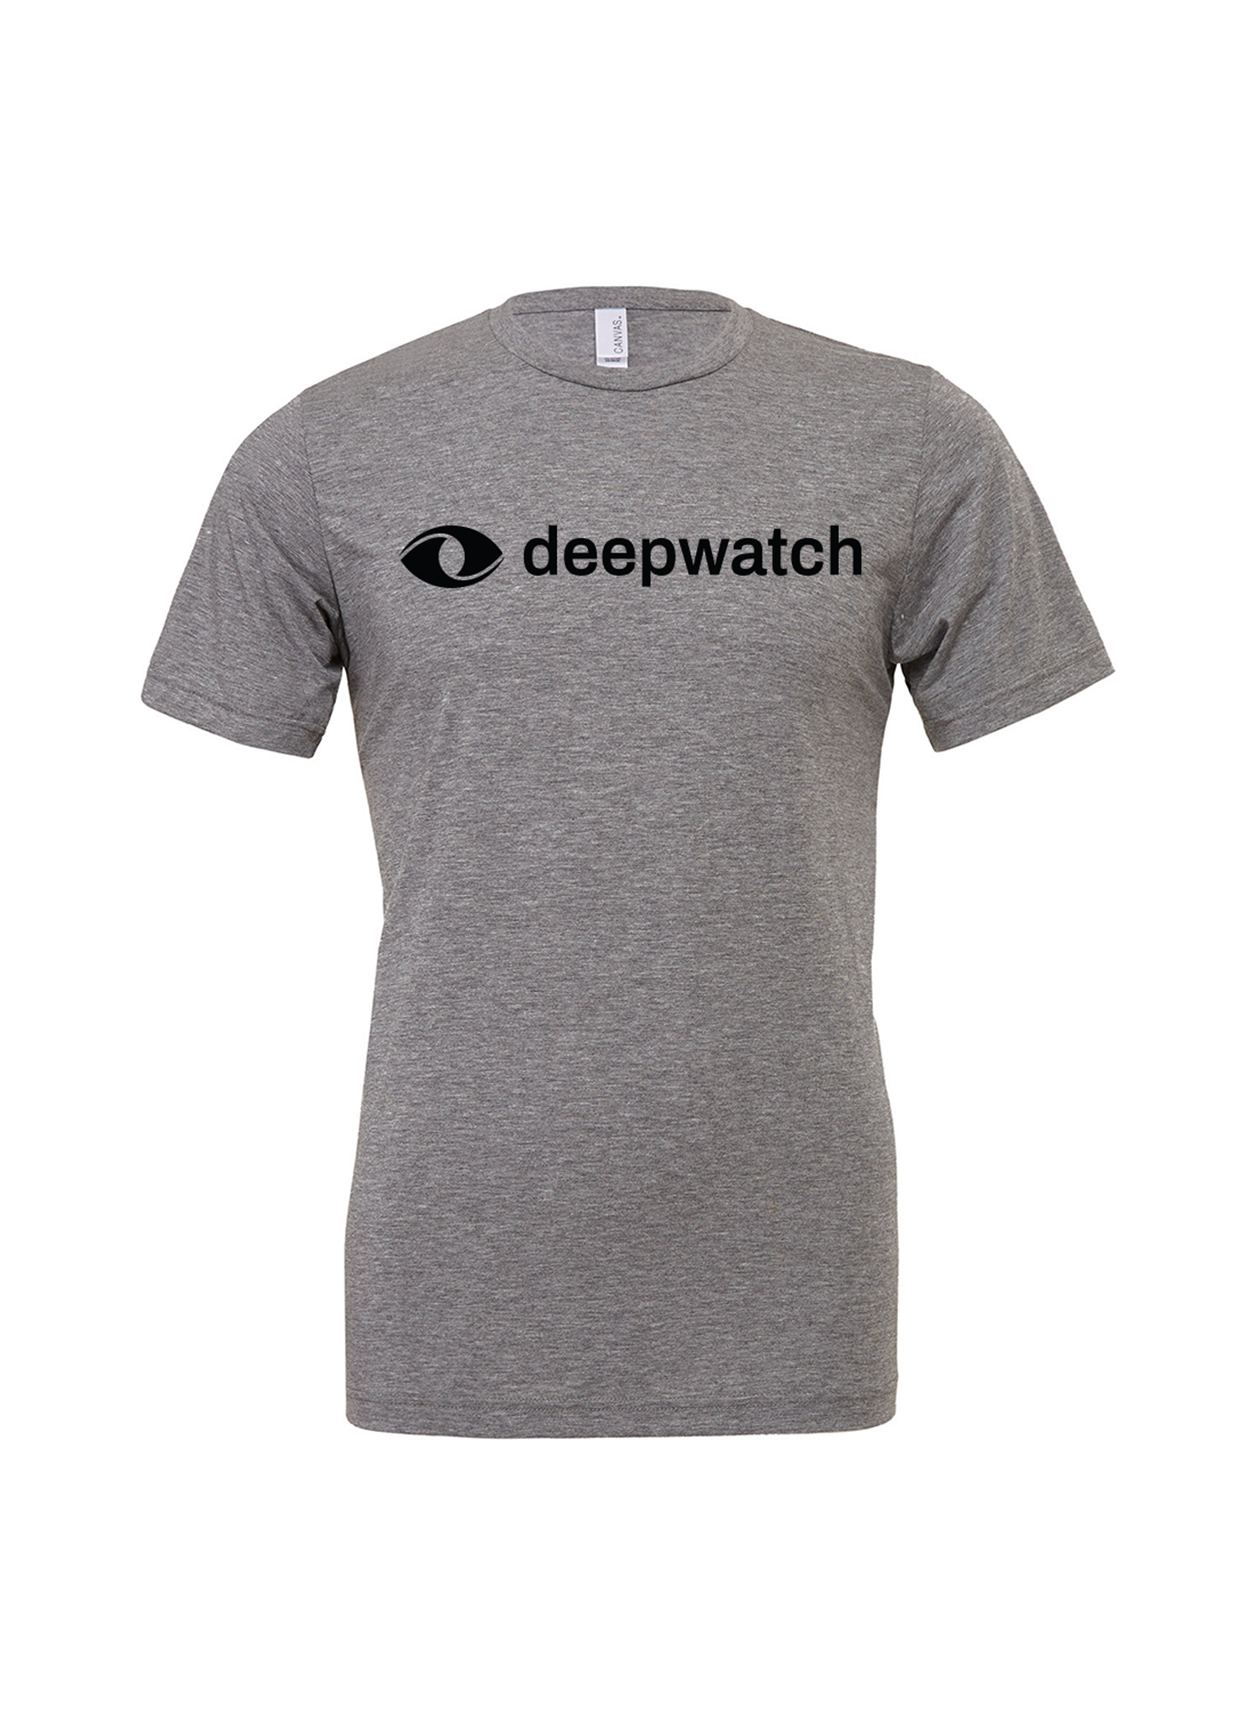 Bella Canvas Unisex Triblend T-Shirt, Grey [Deepwatch]